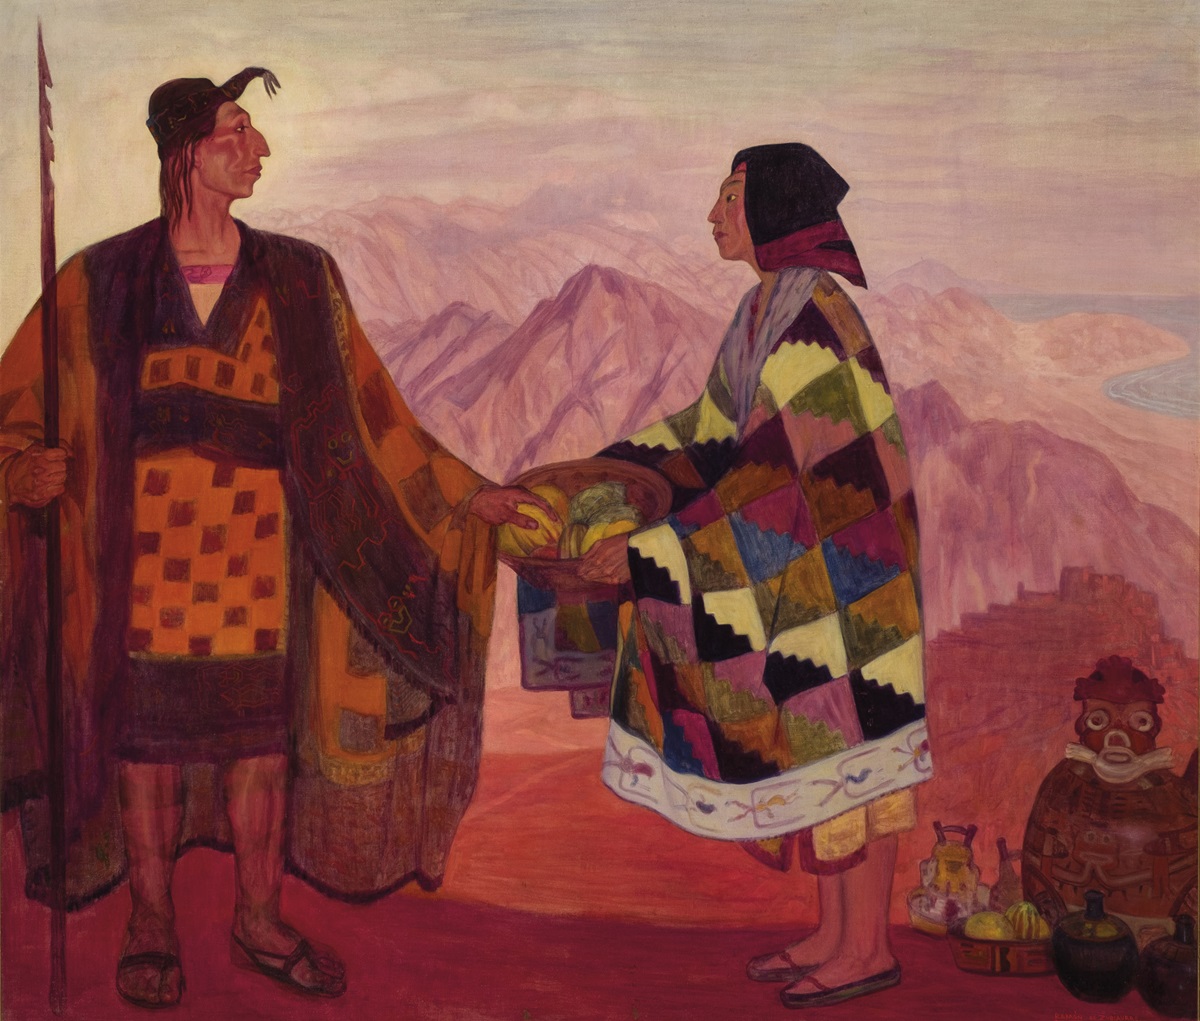 Ramón de Zubiaurre, Incas, 1930. Salida: 5.000 euros. Remate: 5.500 euros. Comprado por el Estado